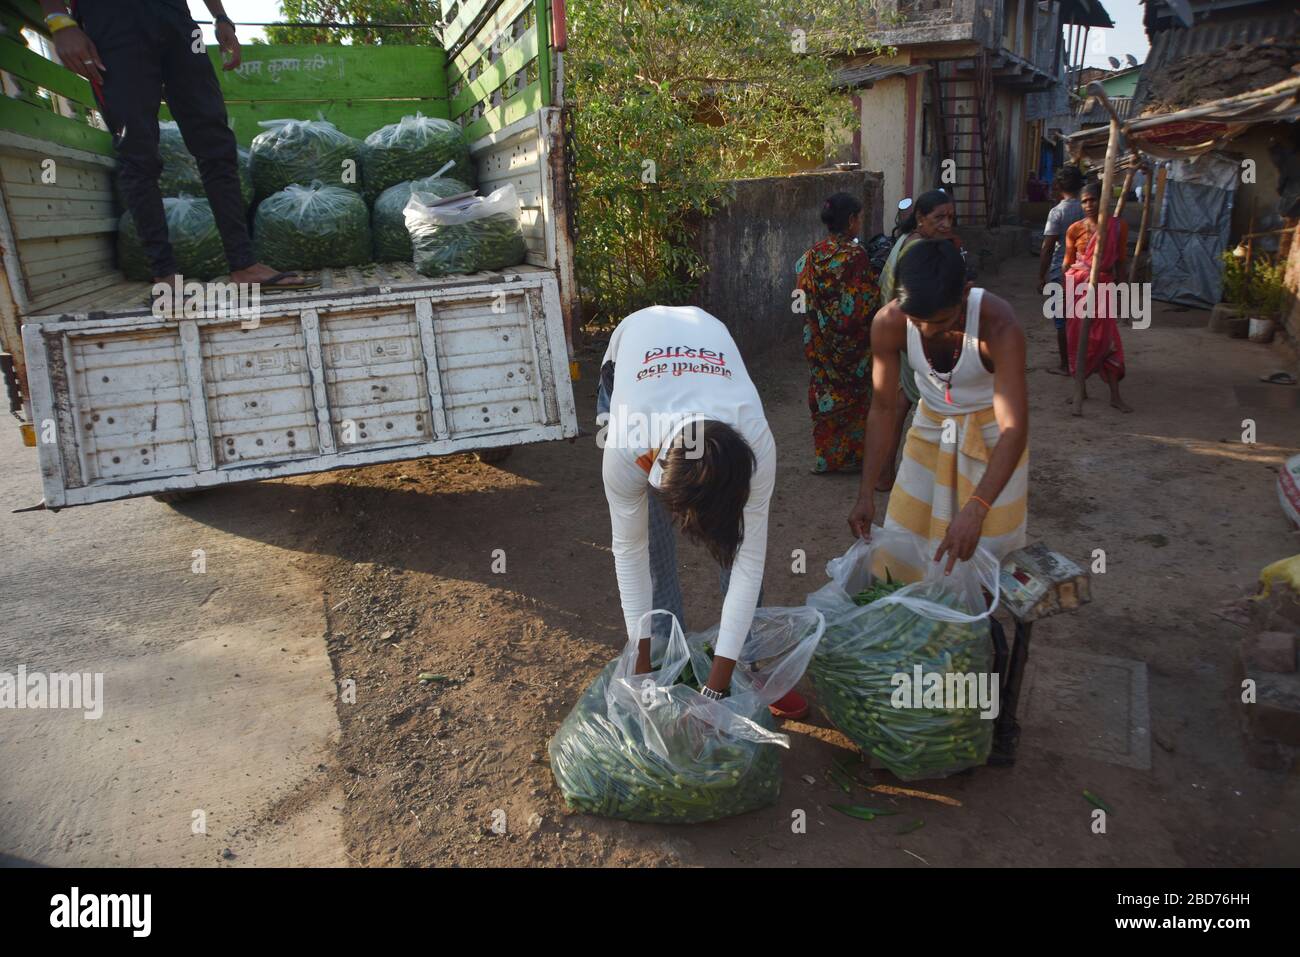 Murbad, Maharashtra, Inde. 13 janvier 2014. Farmer Weighting et de charger des ladyfingers frais d'une ferme pendant le verrouillage national.après les mouvements restreints et la fermeture des principaux marchés pendant le verrouillage de 21 jours, la demande pour tous les légumes dans la ville a augmenté. Les rares agriculteurs à avoir accès à la demande sont occupés pendant cette période de verrouillage. Crédit: Sandeep Rasal/SOPA Images/ZUMA Wire/Alay Live News Banque D'Images